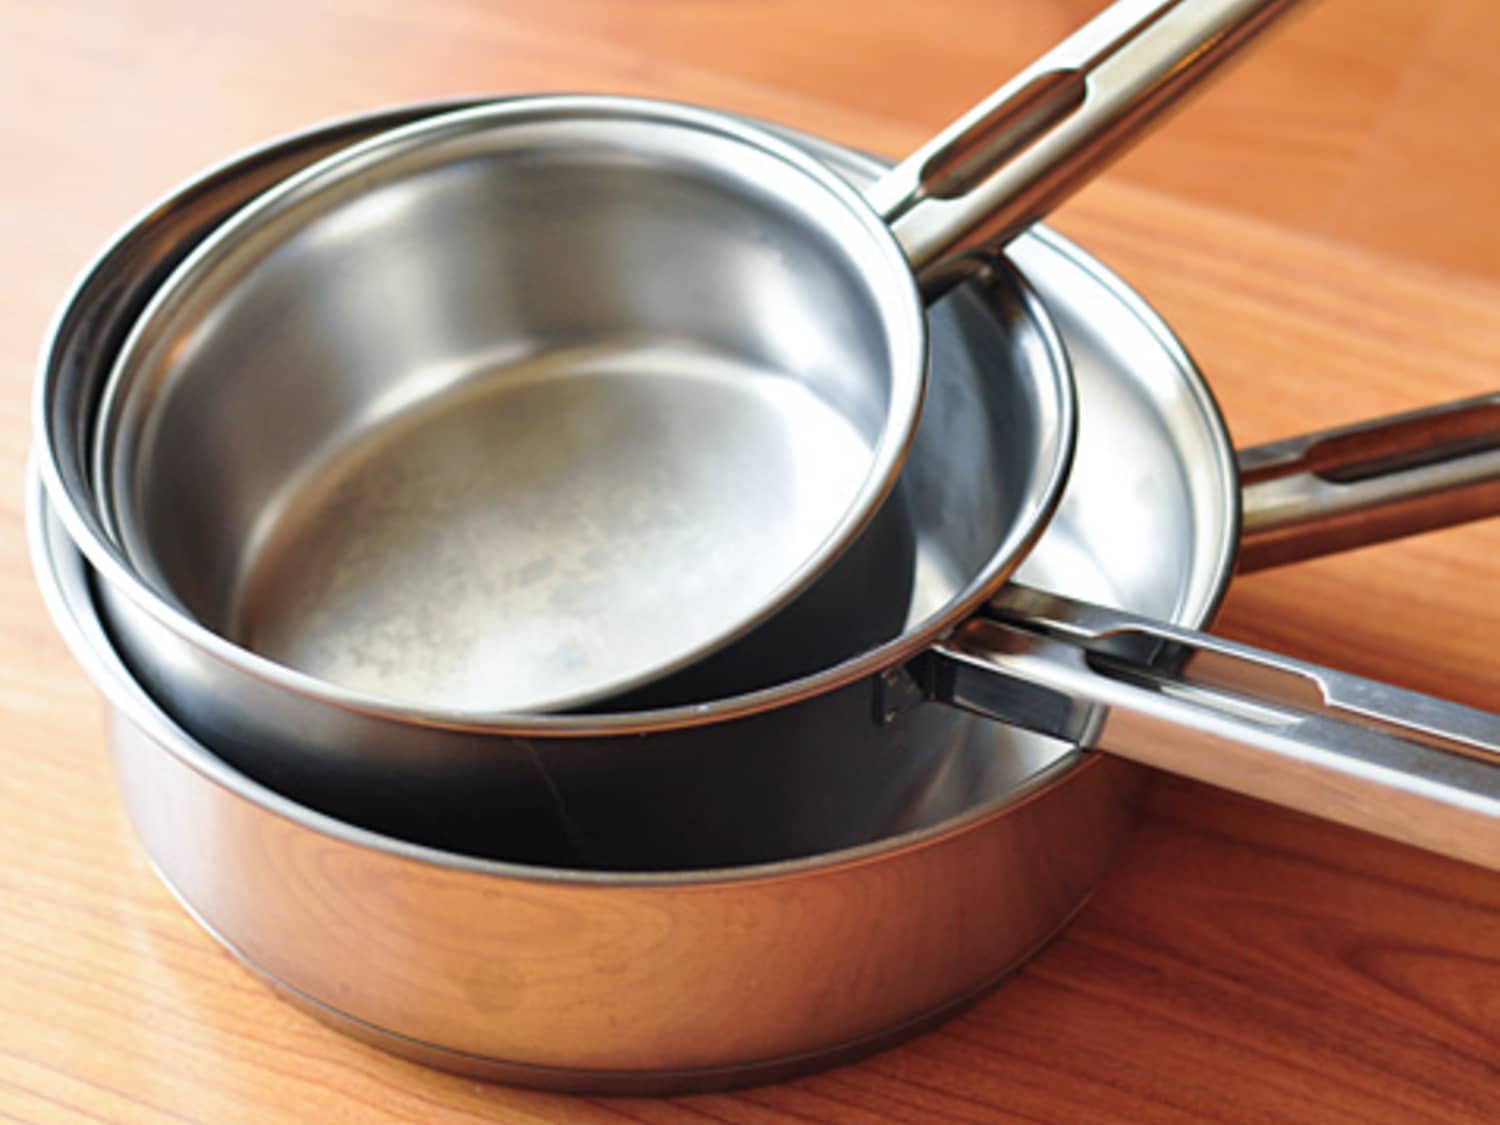 Tramontina Pots & Pans (FRY PAN, 8-Inch)